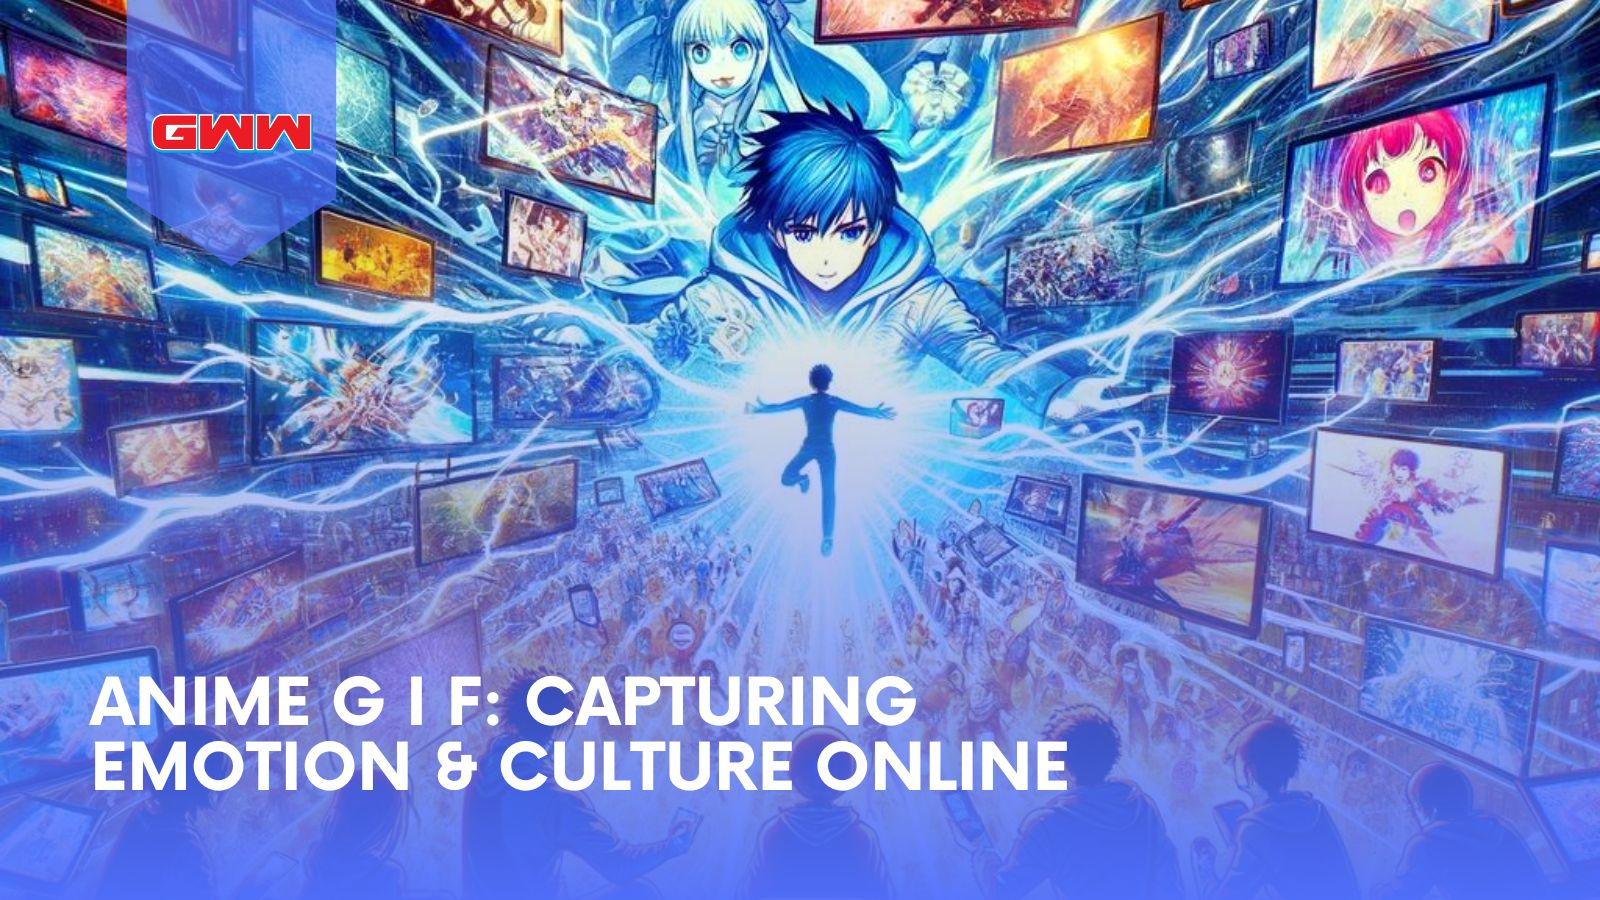 Anime G I F: Capturing Emotion & Culture Online